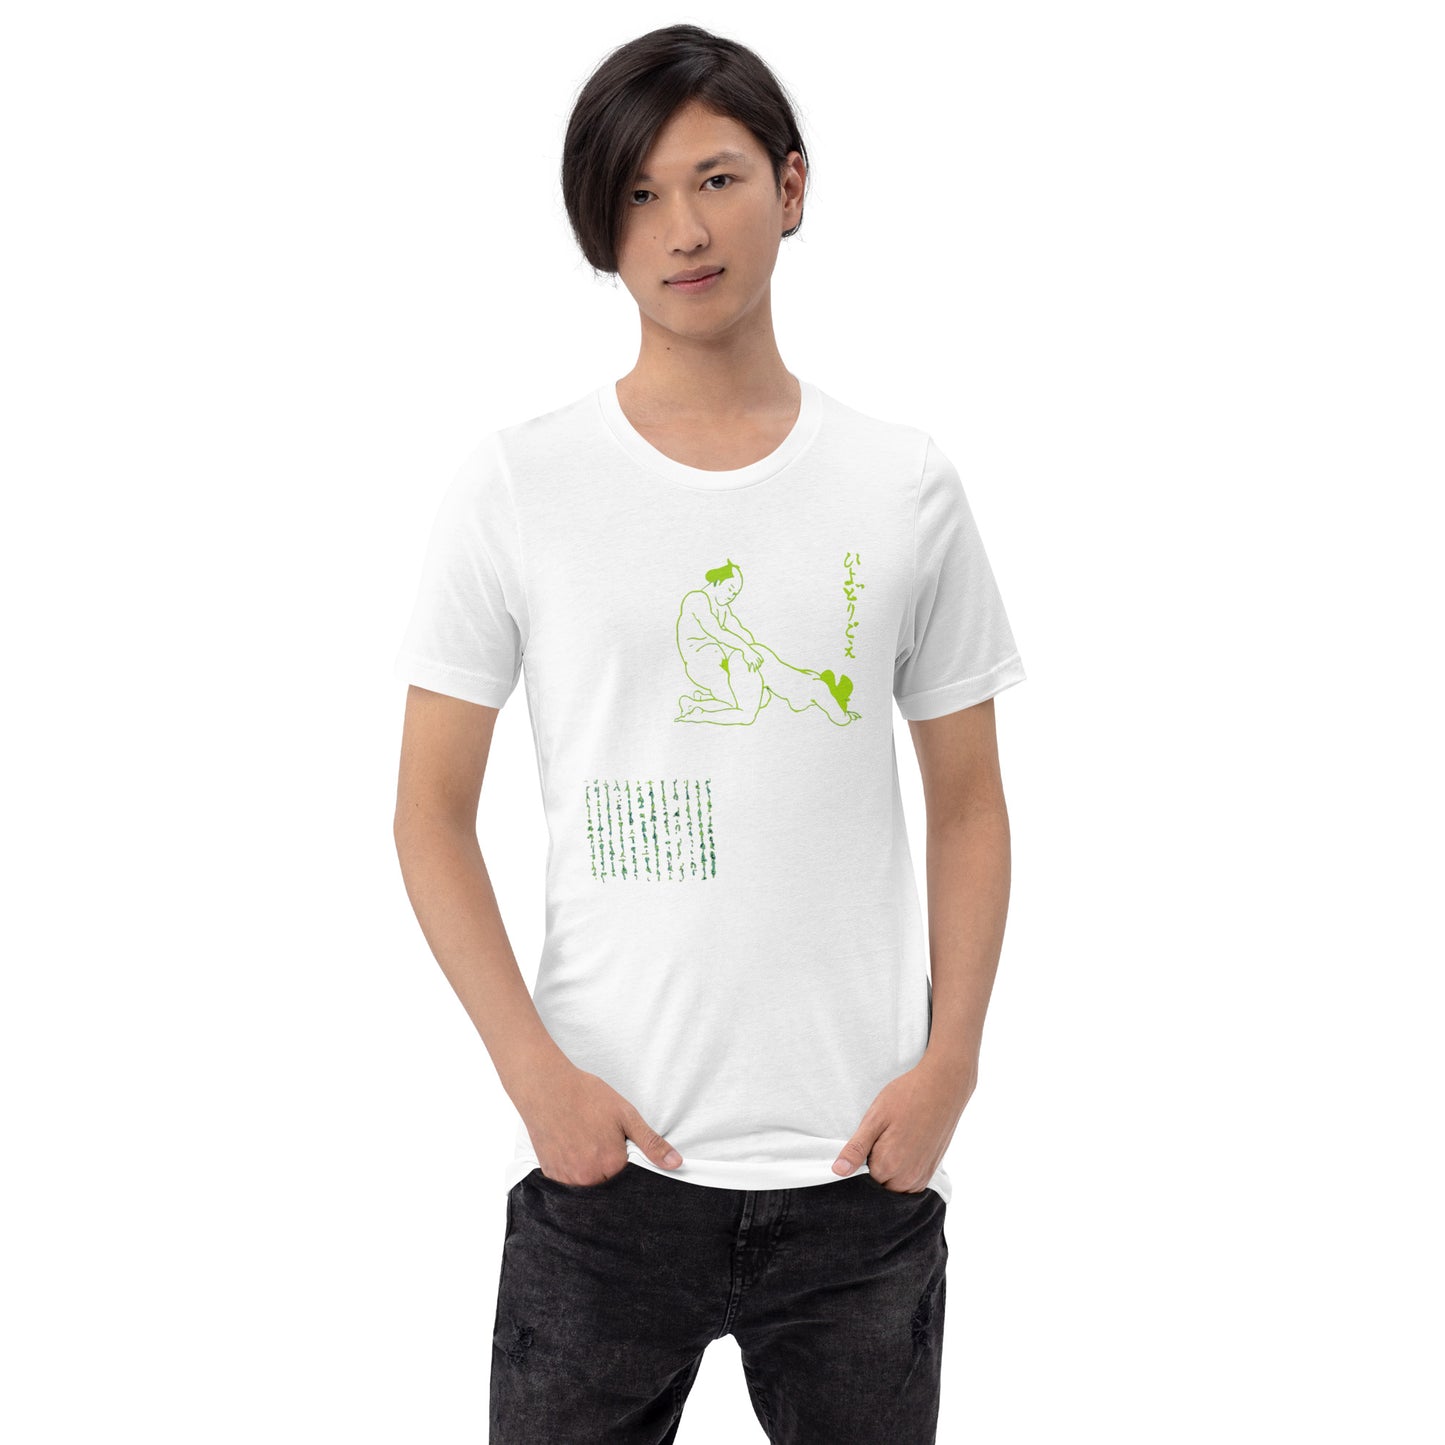 Unisex t-shirt "34 HIYODORI GOE" White